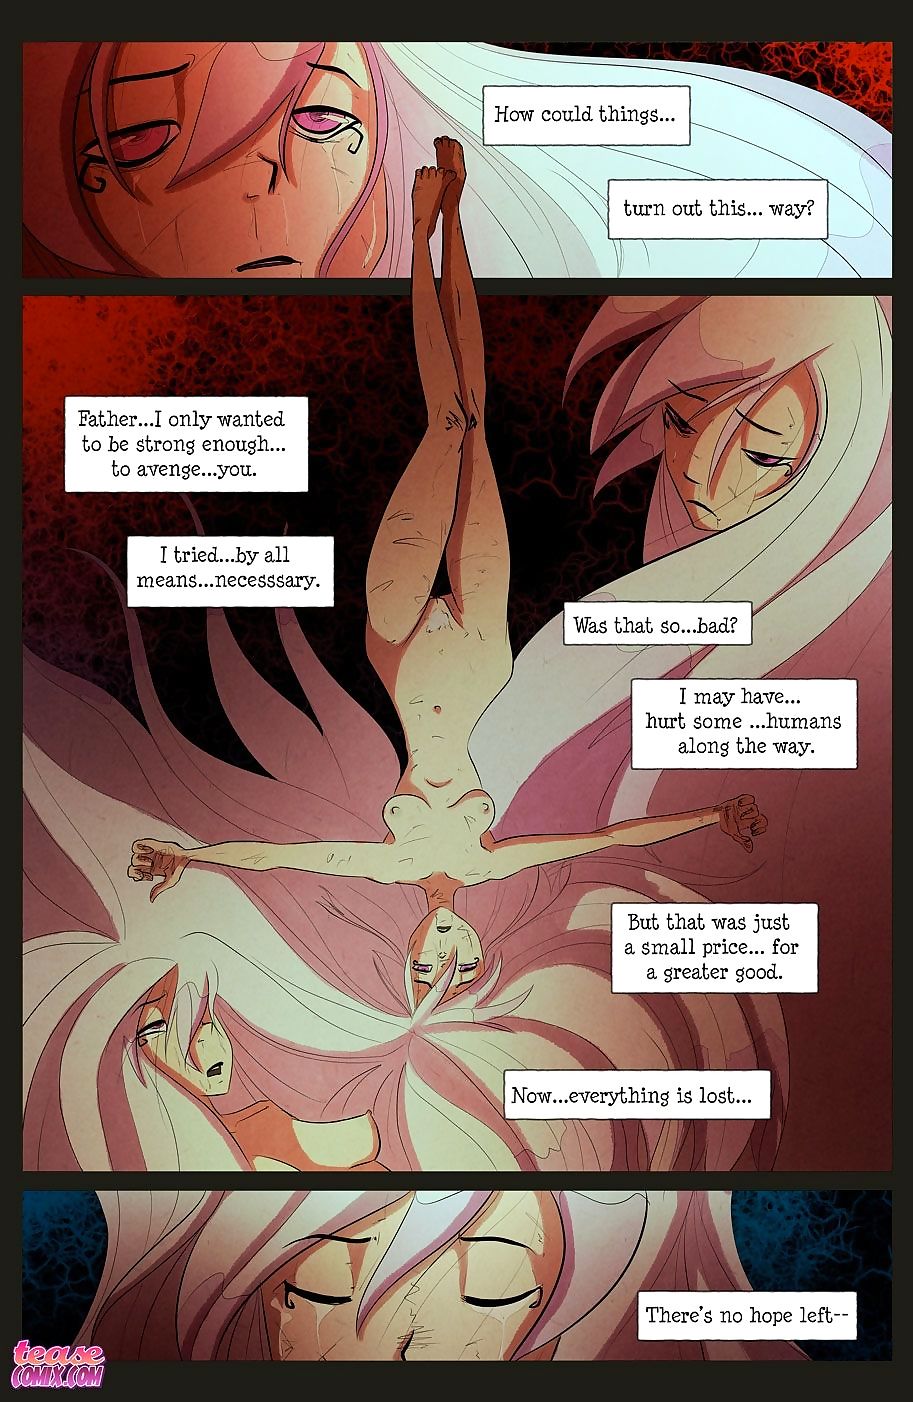 il strega Con no nome - parte 4 page 1